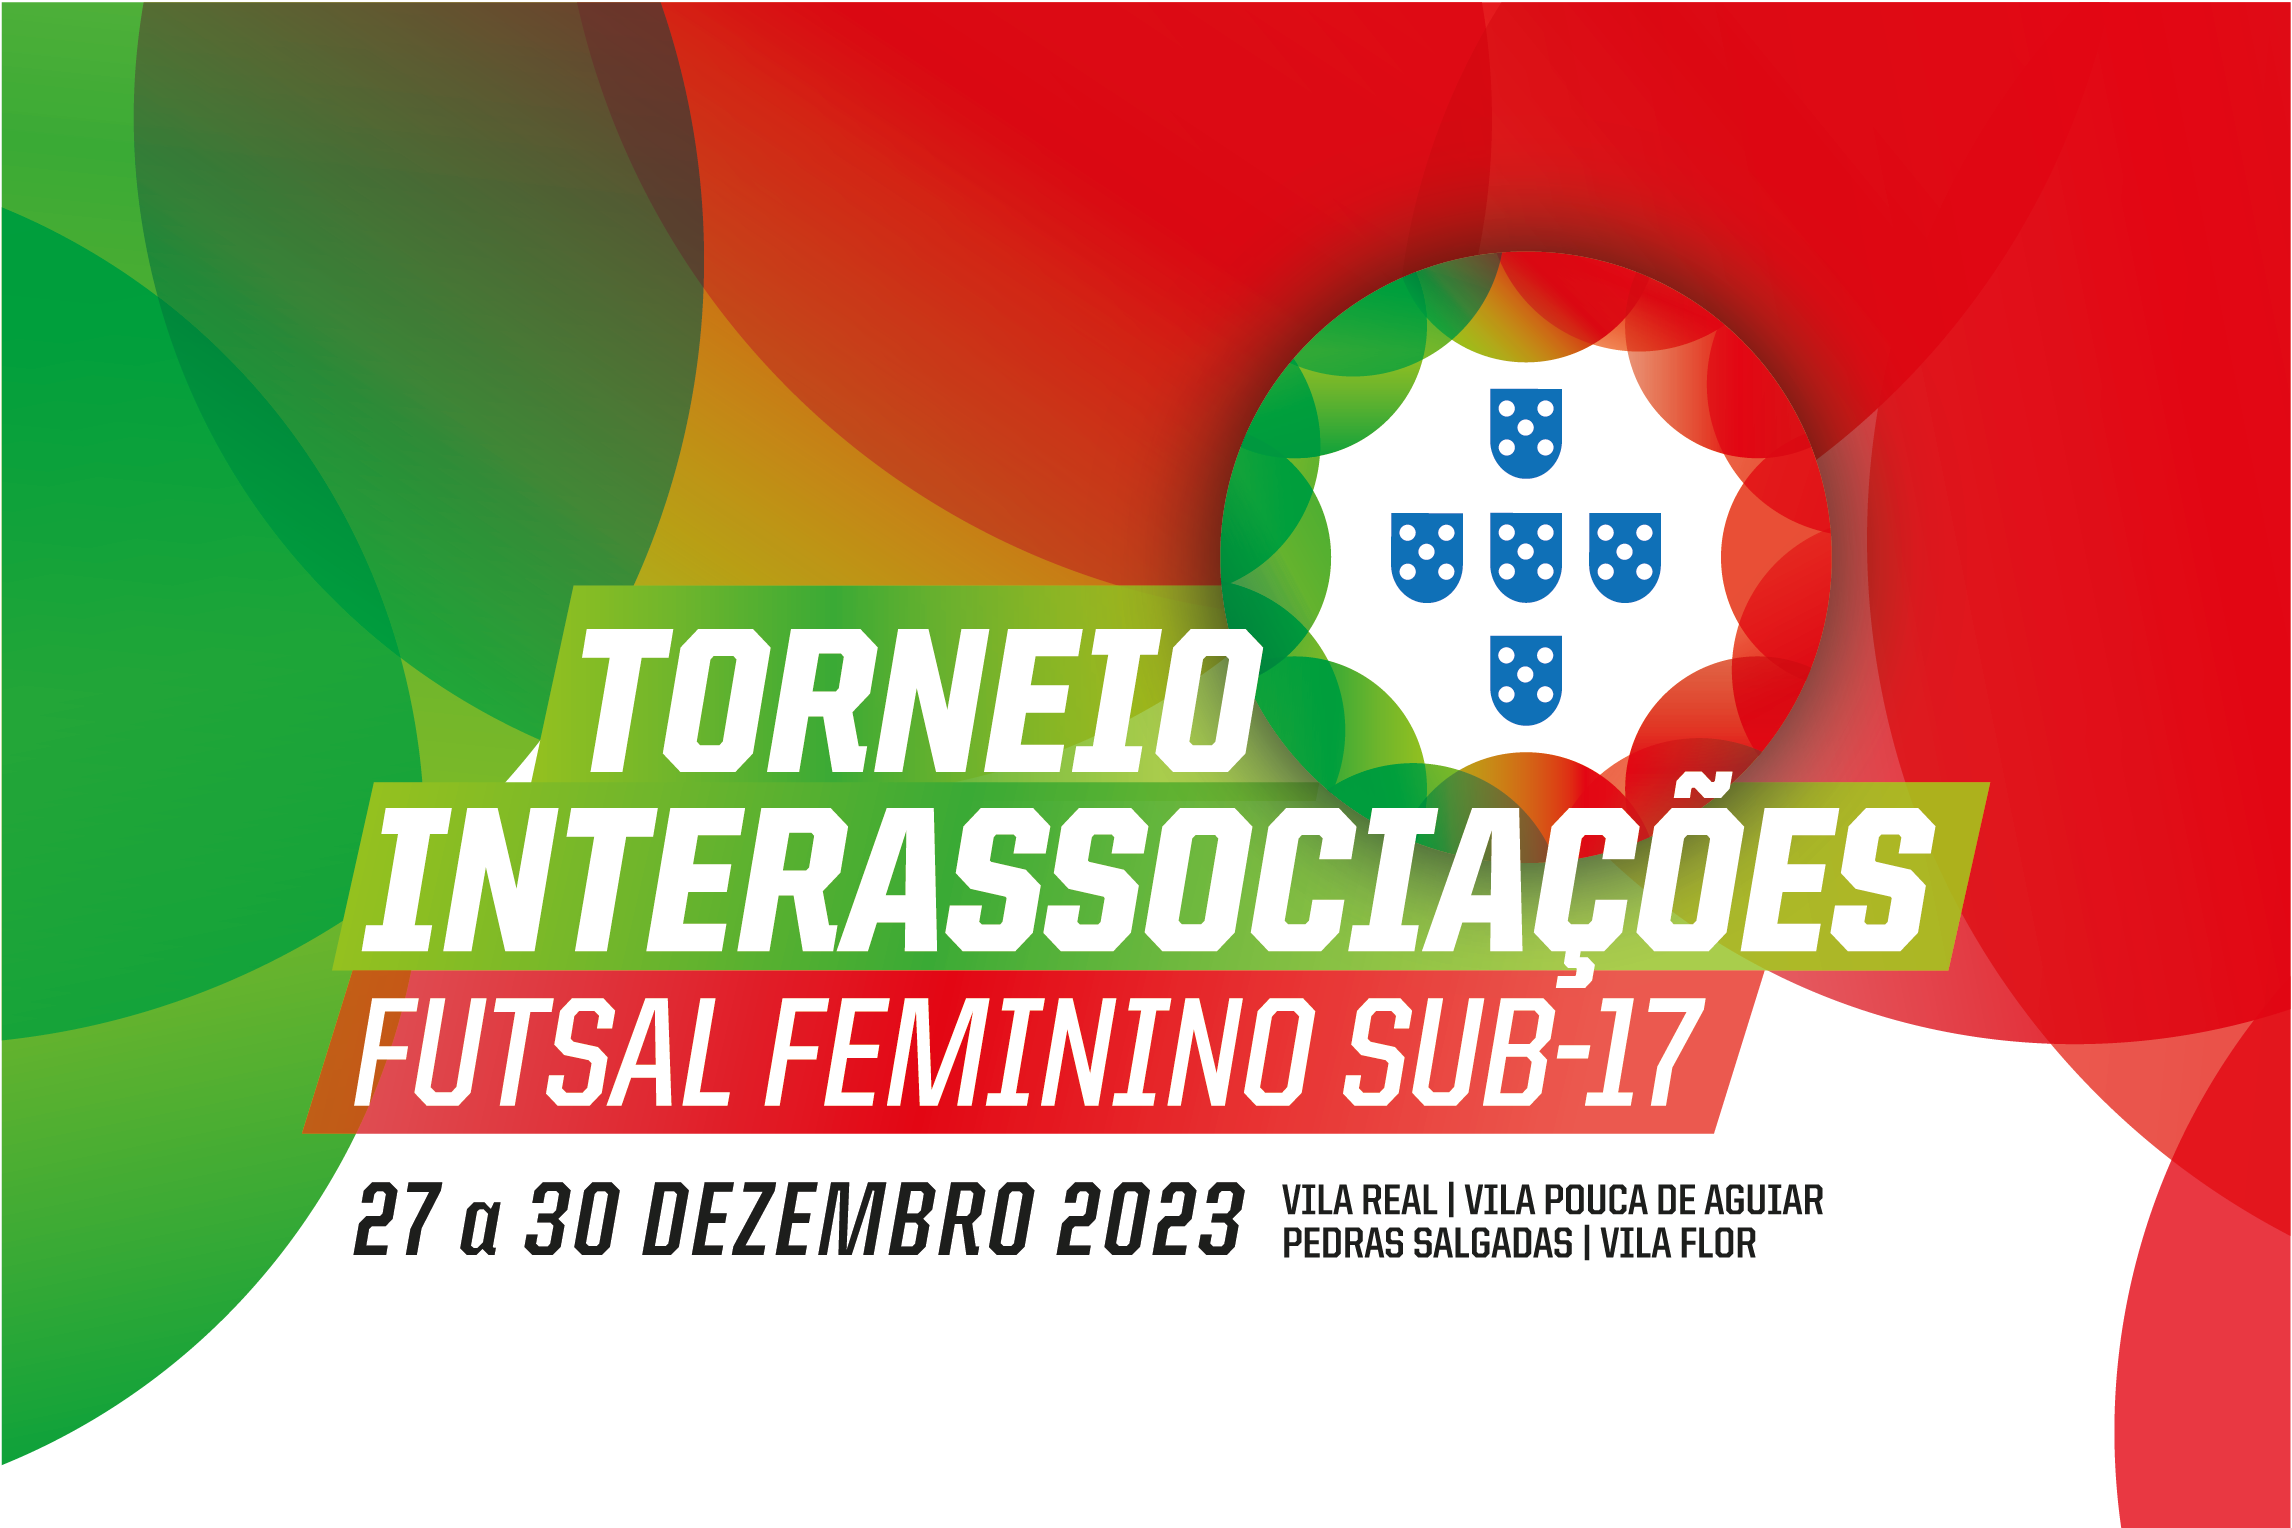 Torneio Interassociações de Futsal Feminino Sub-17 disputa-se em Vila Real